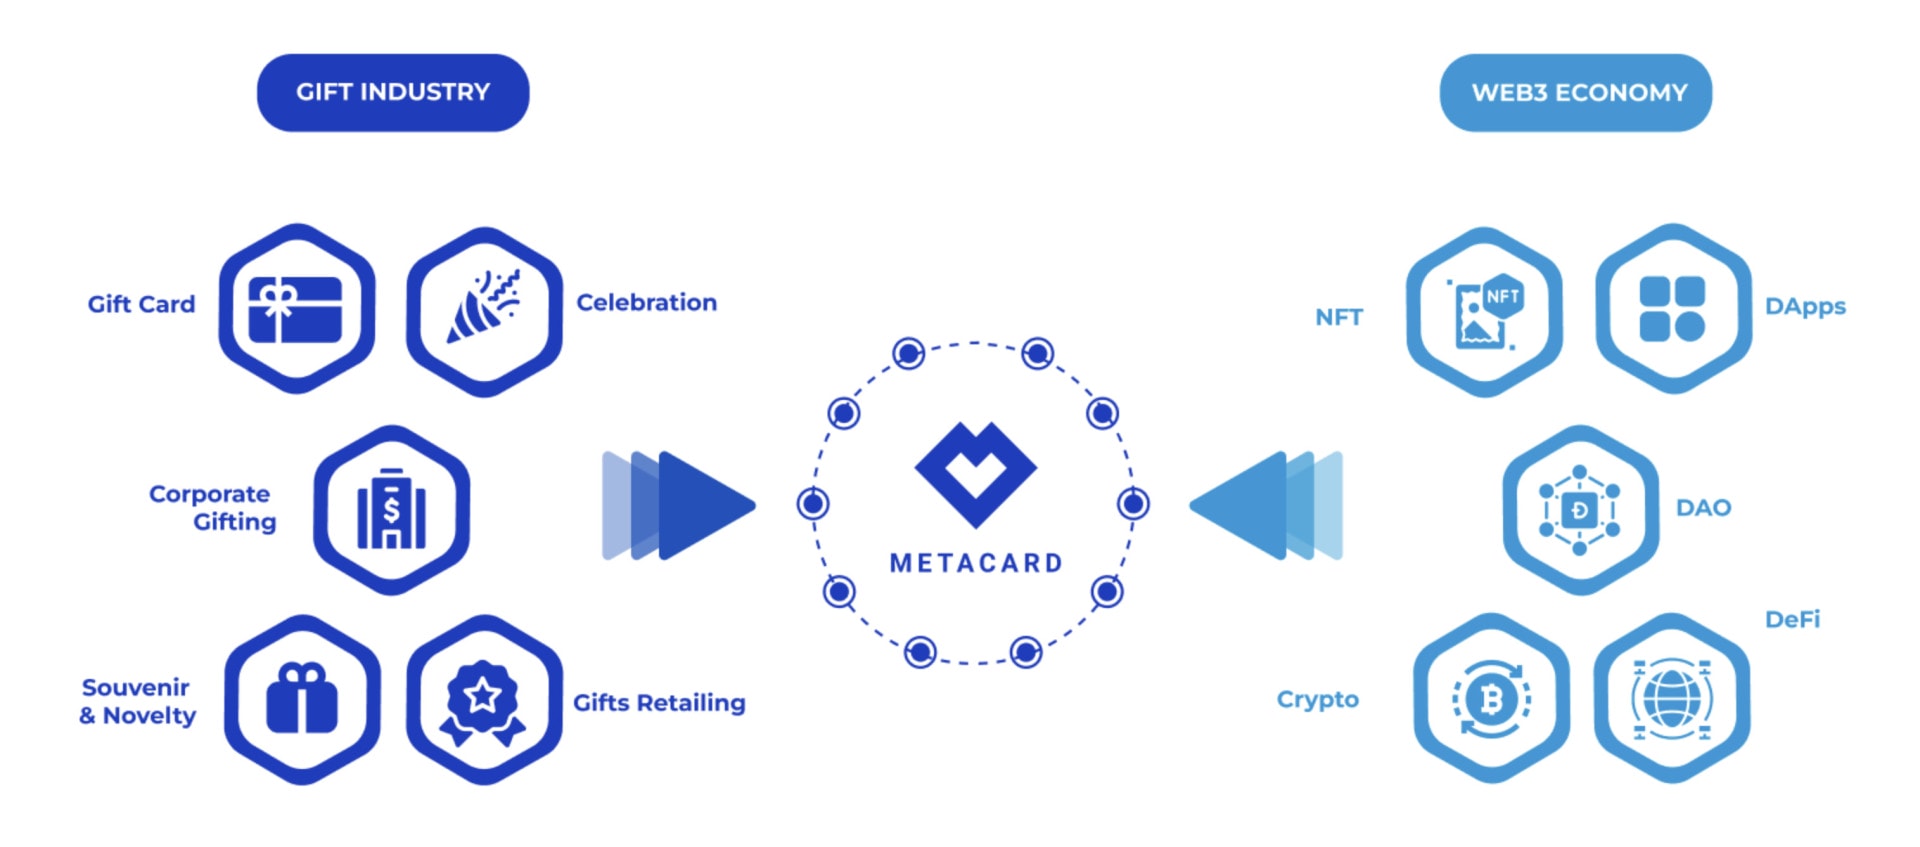 Metacard redessine la carte cadeau version Web 3